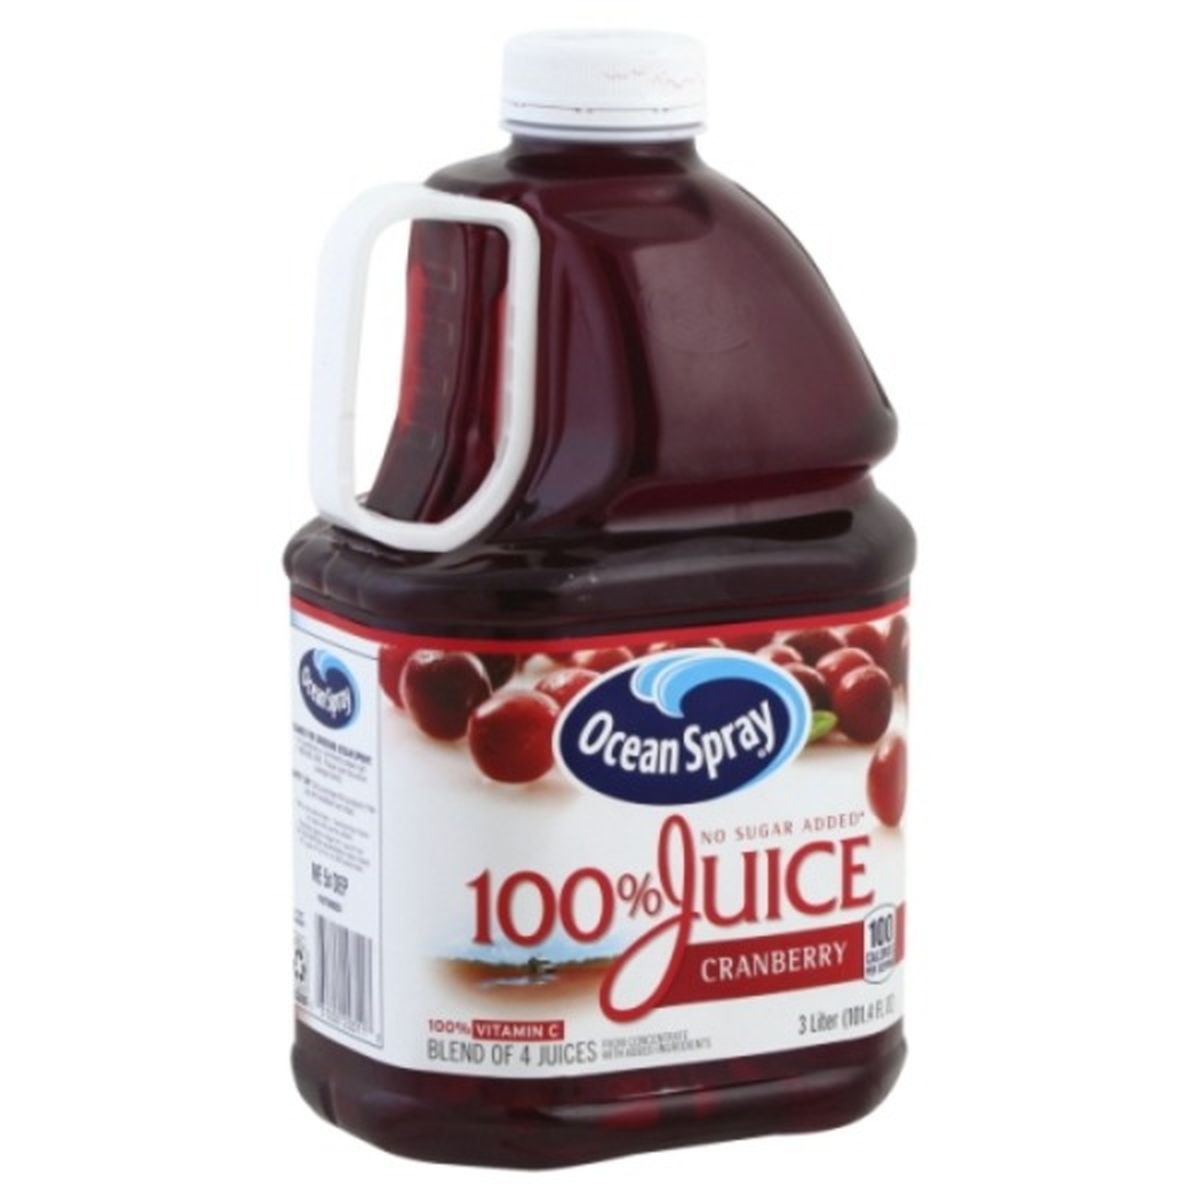 Calories in Ocean Spray 100% Juice, Cranberry